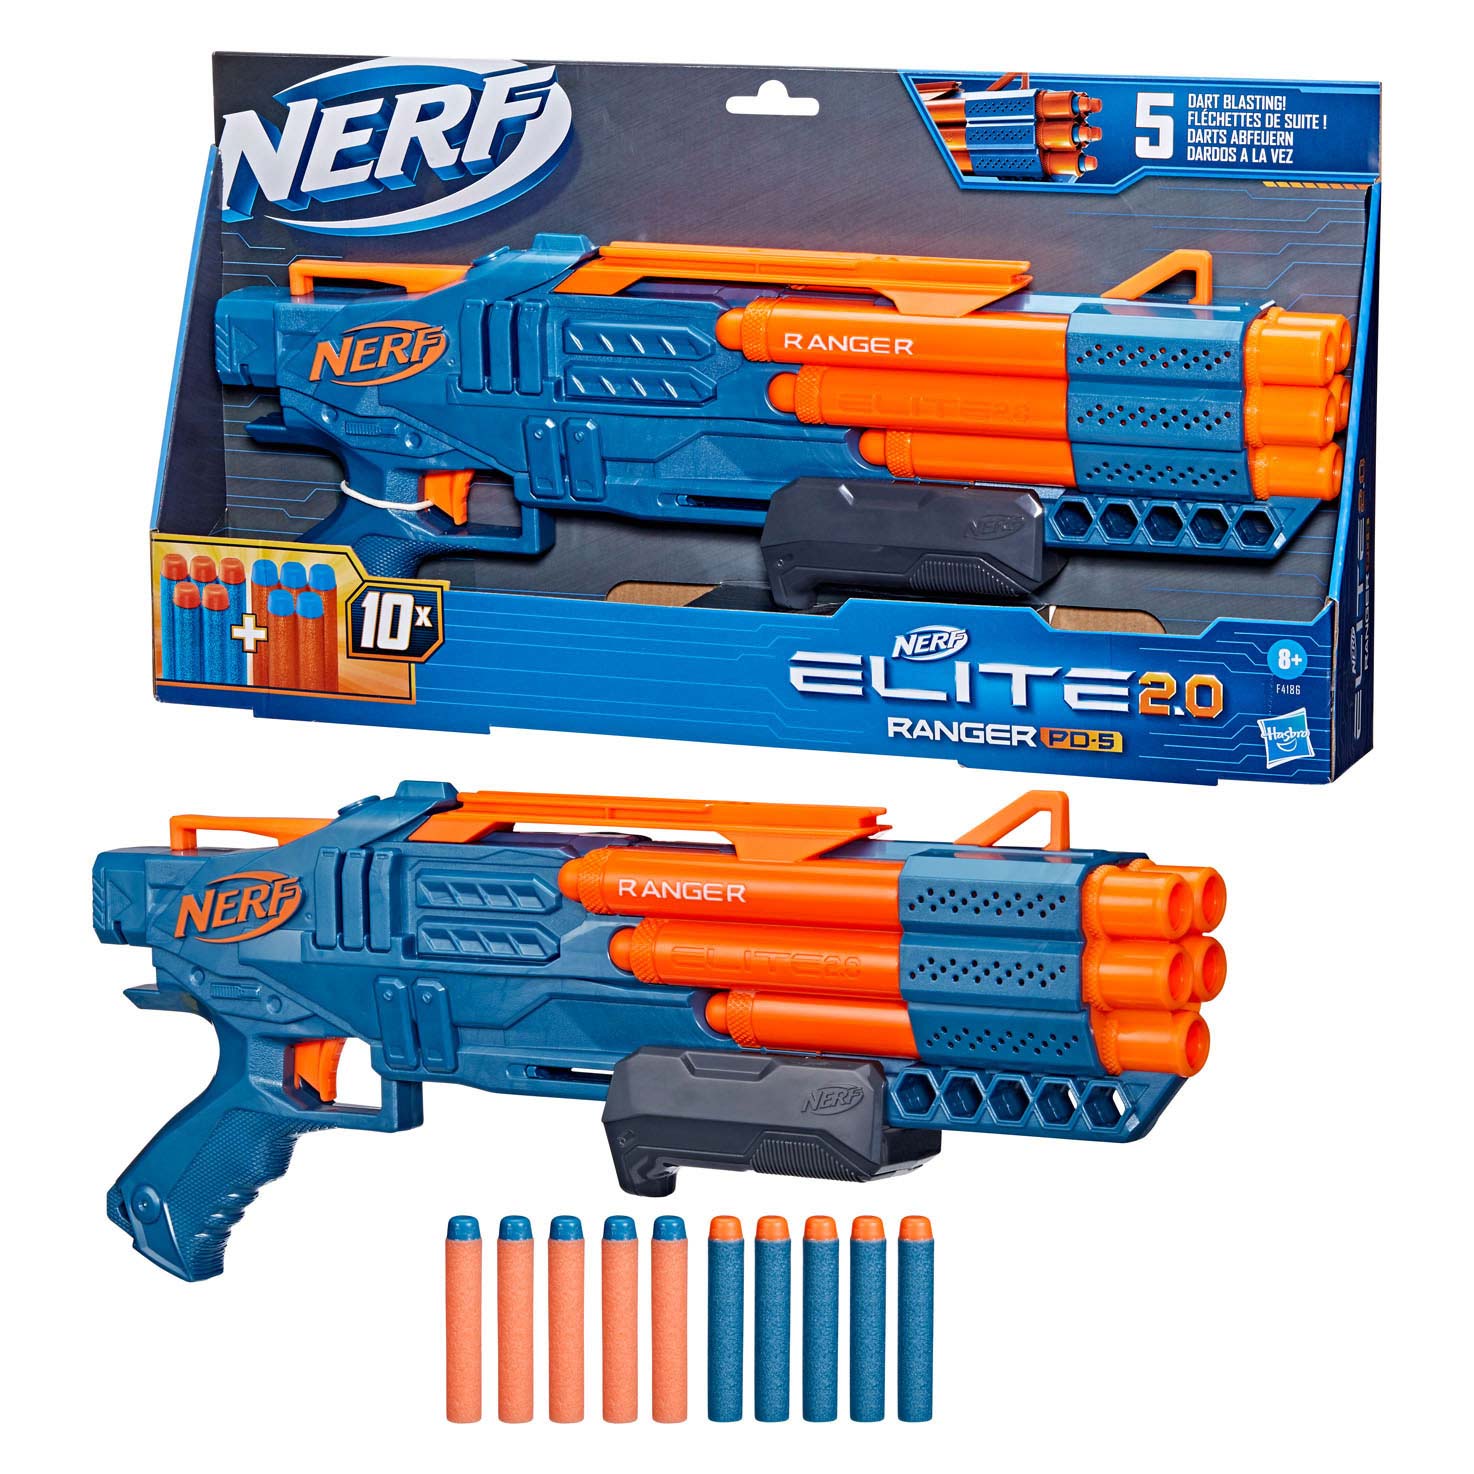 Nerf Elite 2.0 Ranger PD 5 Blaster